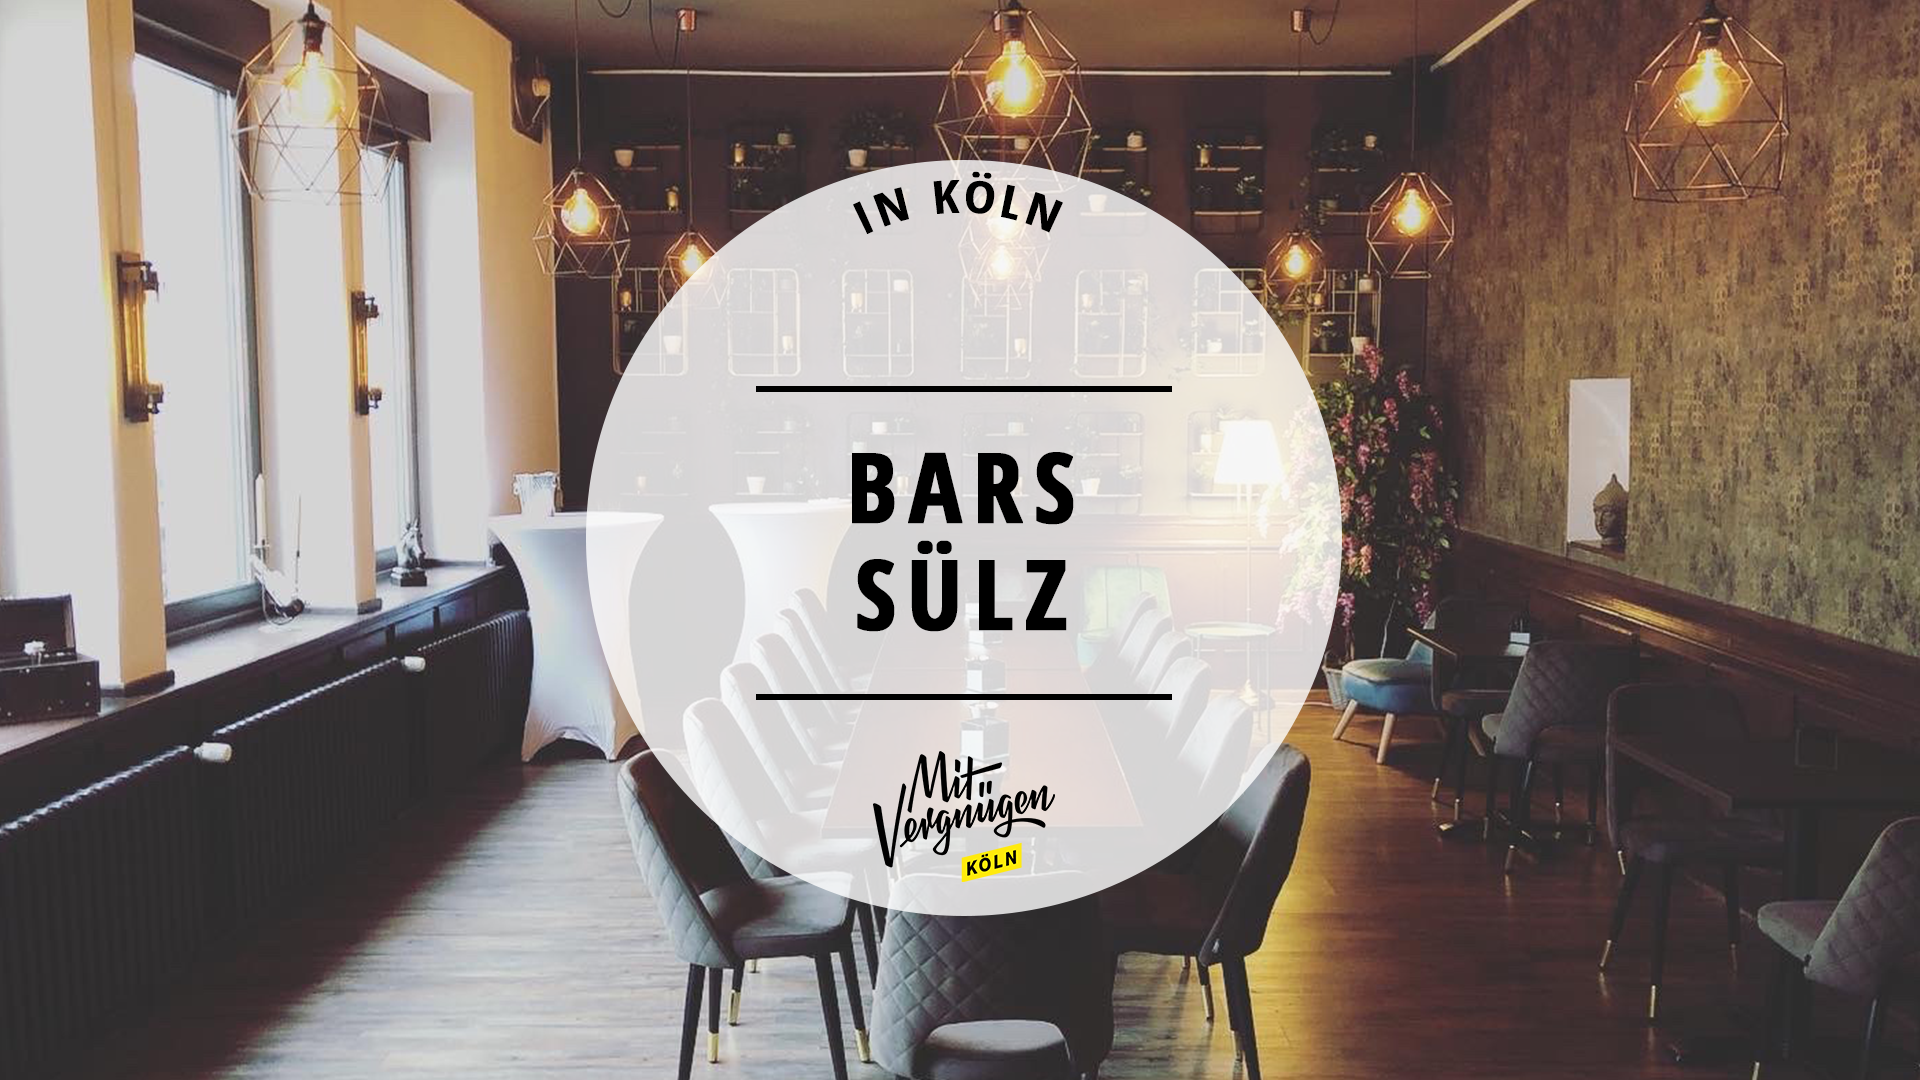 #11 Bars und Kneipen in Sülz, die ihr kennen solltet